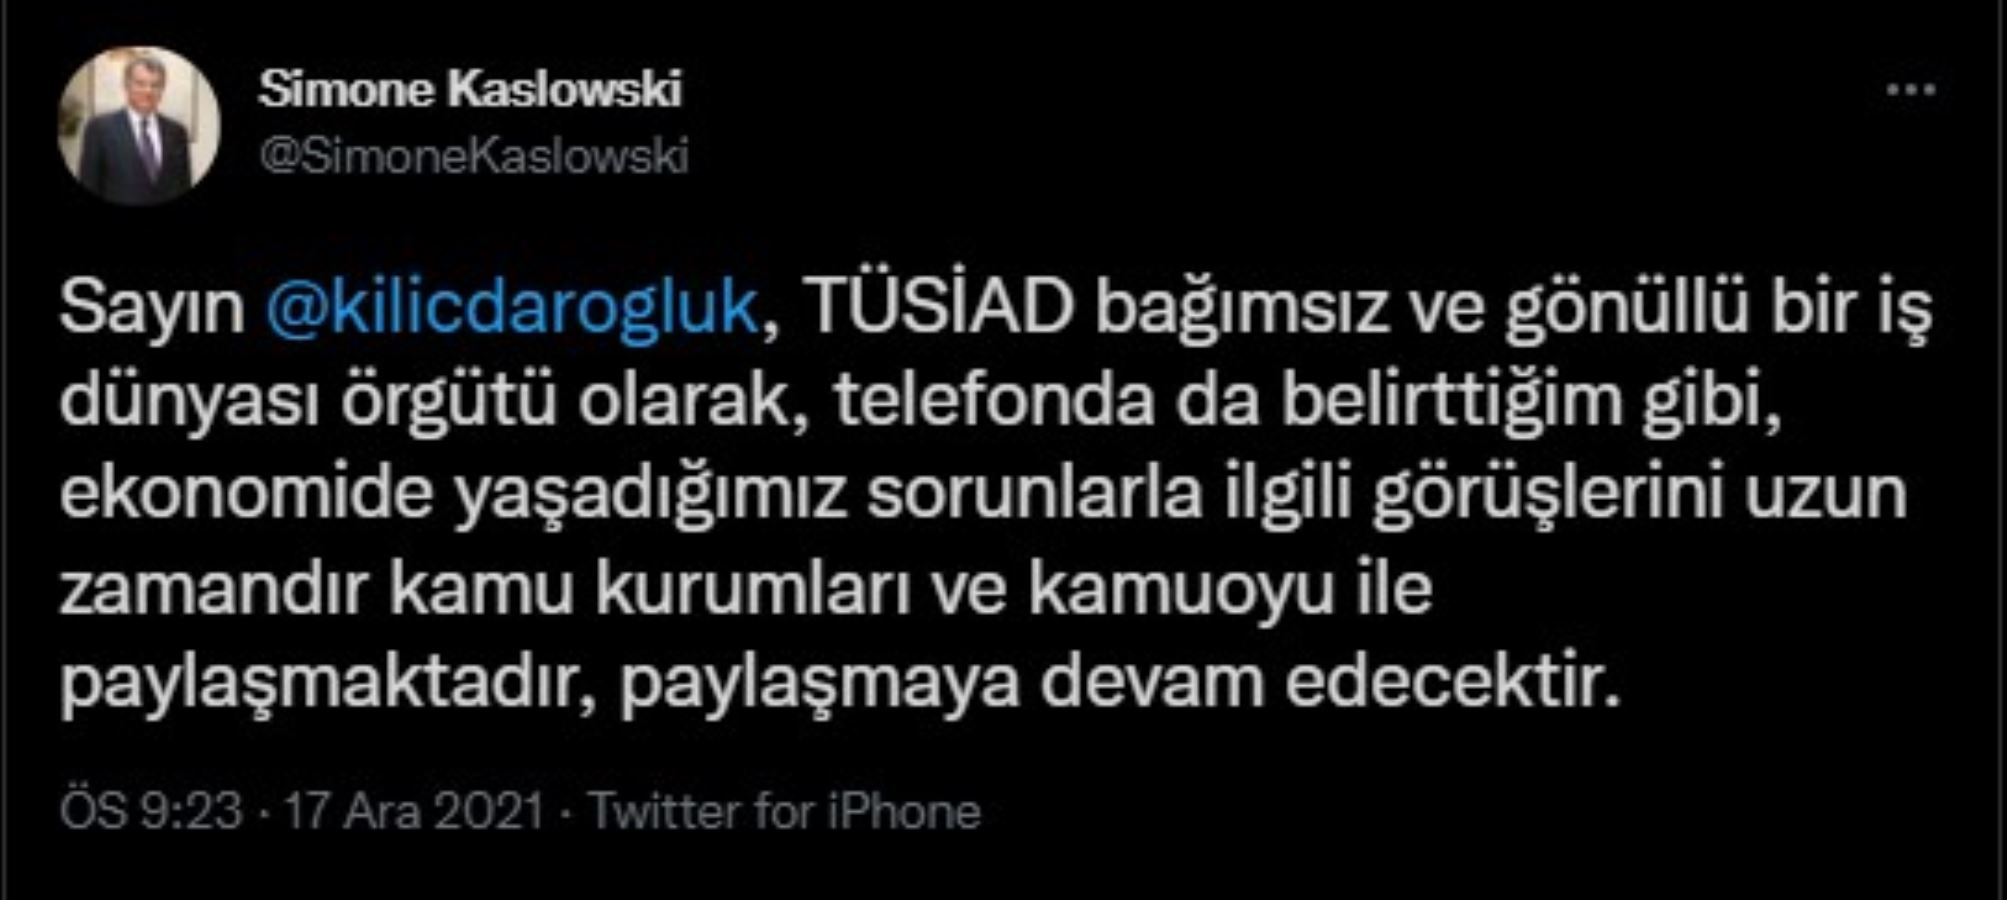 Kılıçdaroğlu ile görüşmesinden sonra TÜSİAD Başkanı Simone Kaslowski'den açıklama